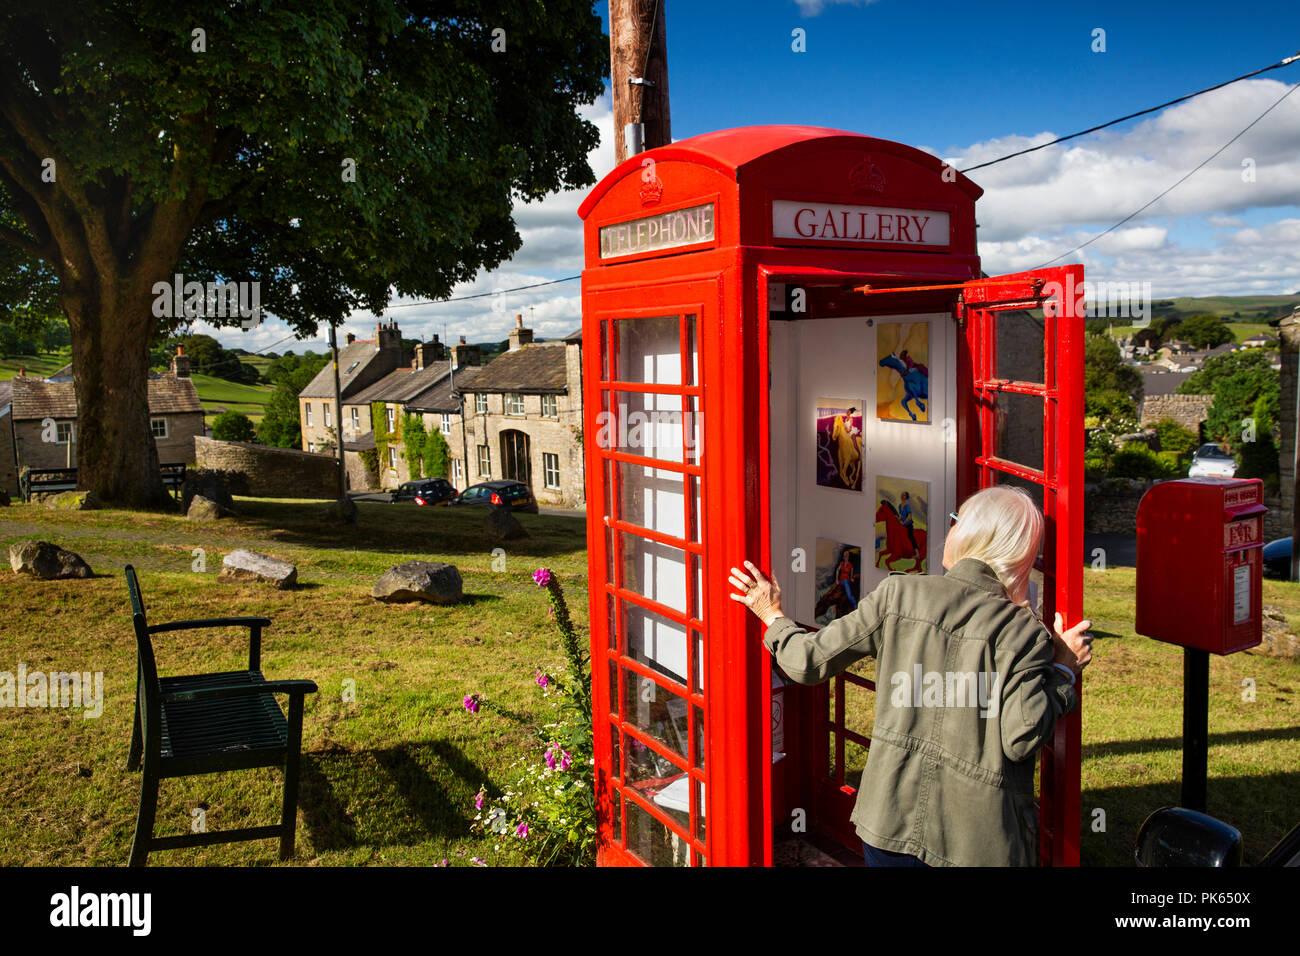 England, Yorkshire, siedeln, Grüne Kopf Lane, Besucher in die Galerie auf dem Grün suchen, in alten K6 Handy's Box, Welt smnallest Art Gallery Stockfoto